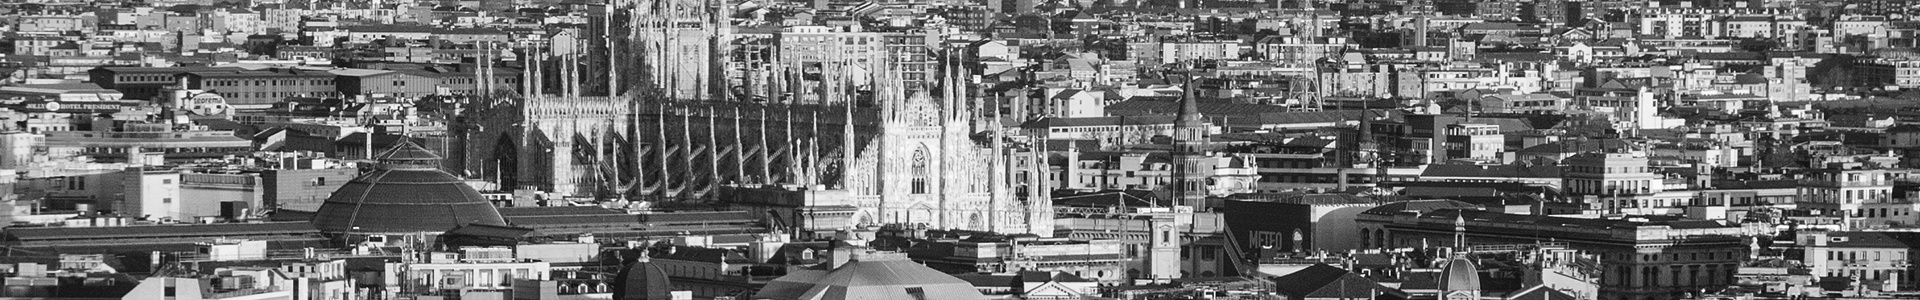 Панорама Милана в черно-белом цвете